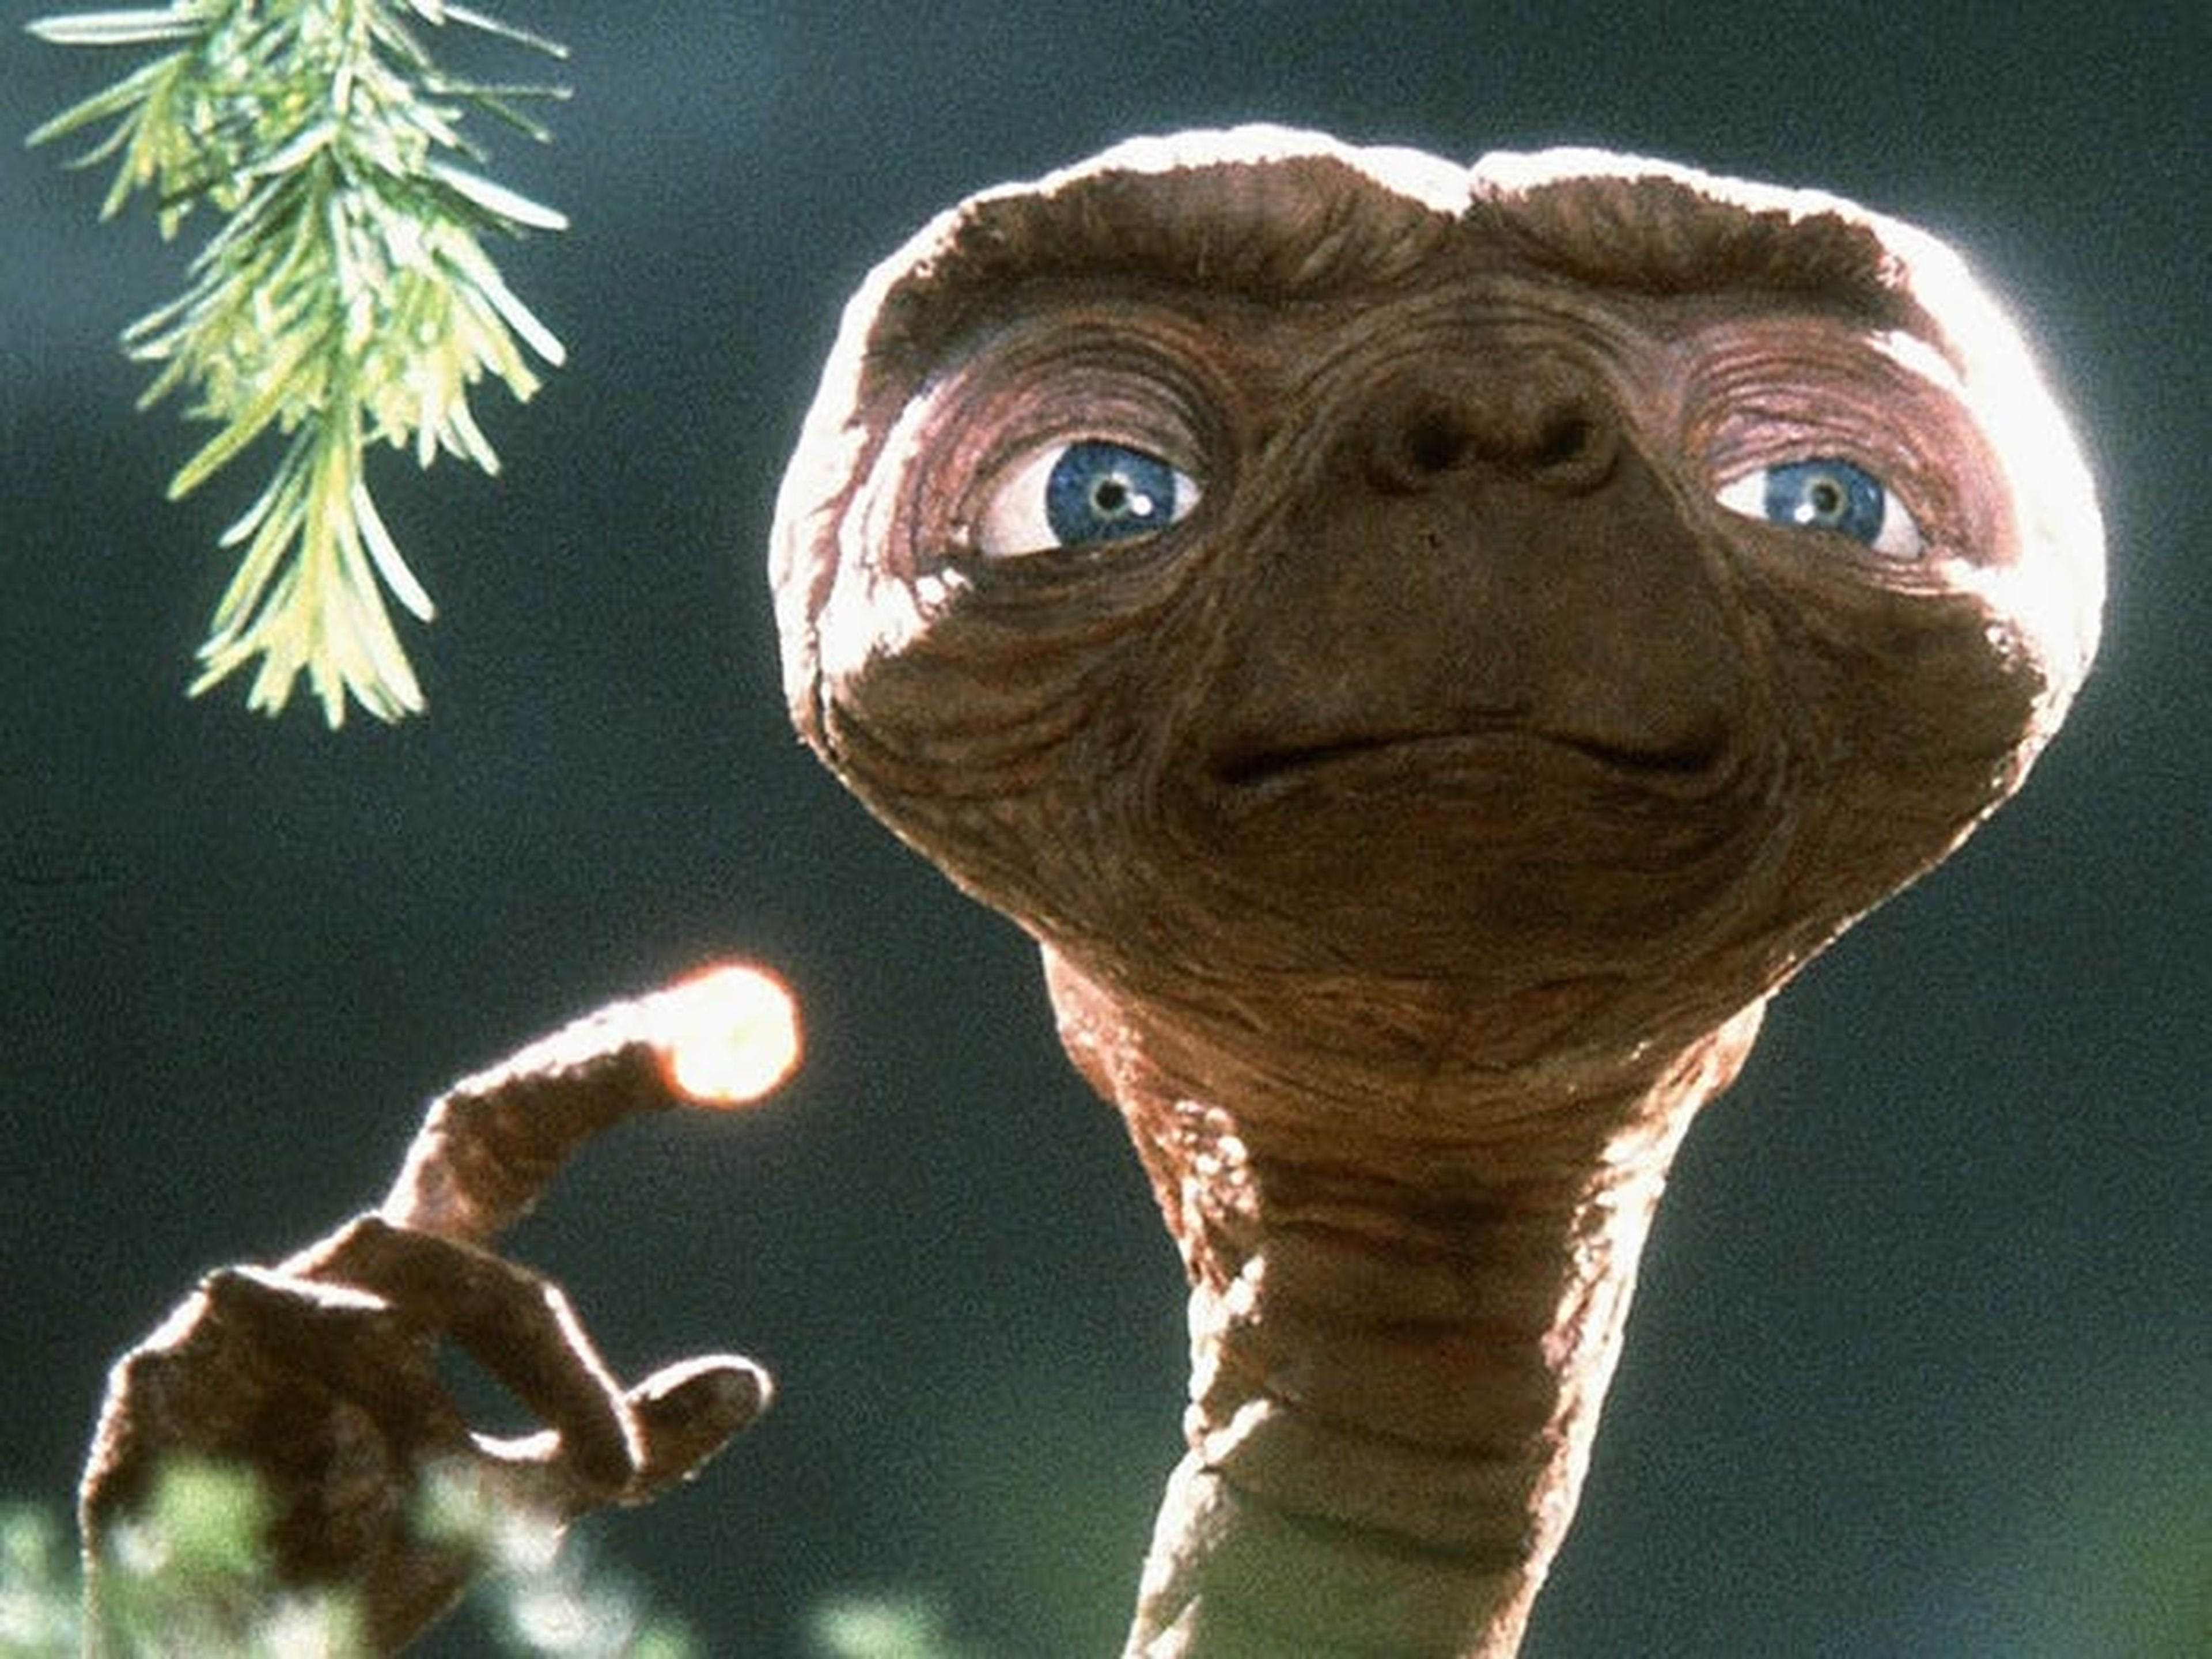 E.T., el extraterrestre